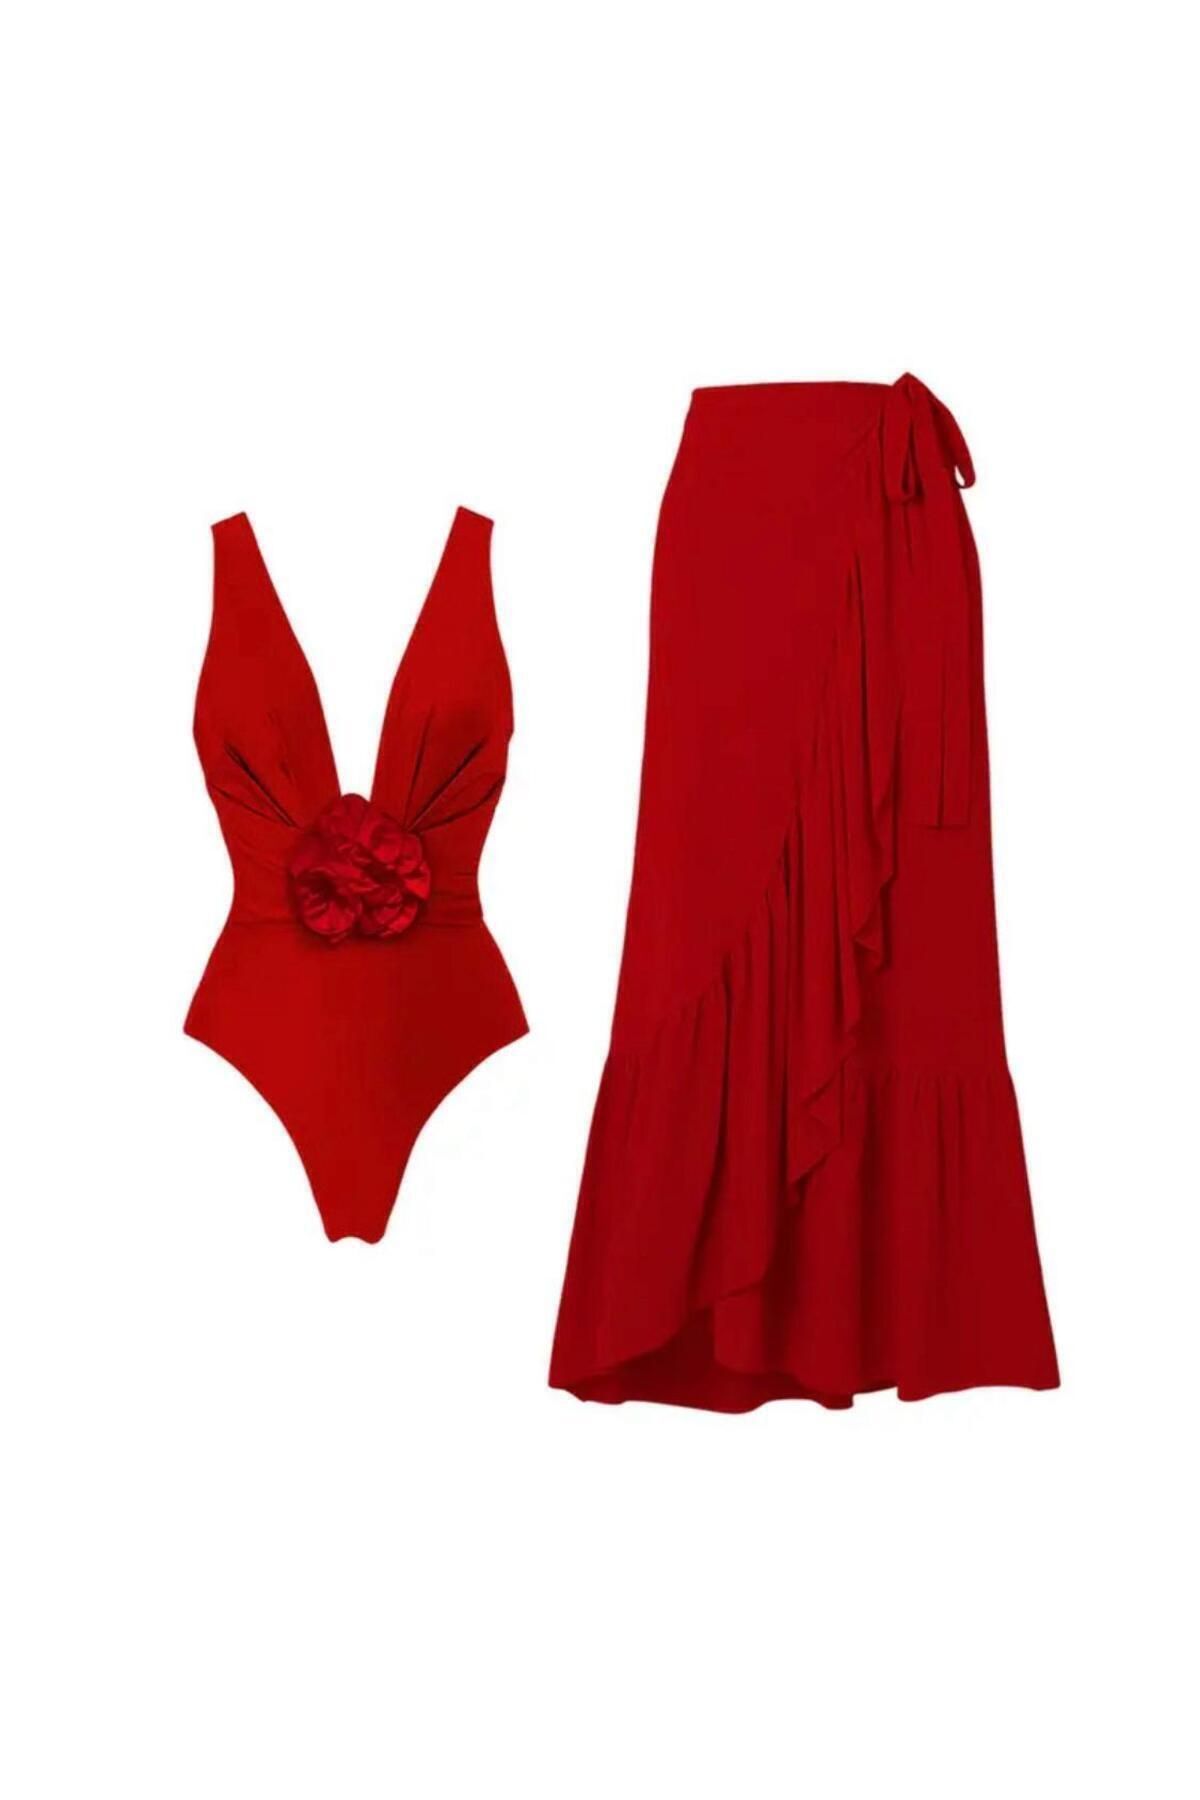 DESİGNEDBYD Yeni Designer Kadın Mayo+pareo Etek Takım 2 Parça Up Set Bodysuit Plaj Moda Beachwear